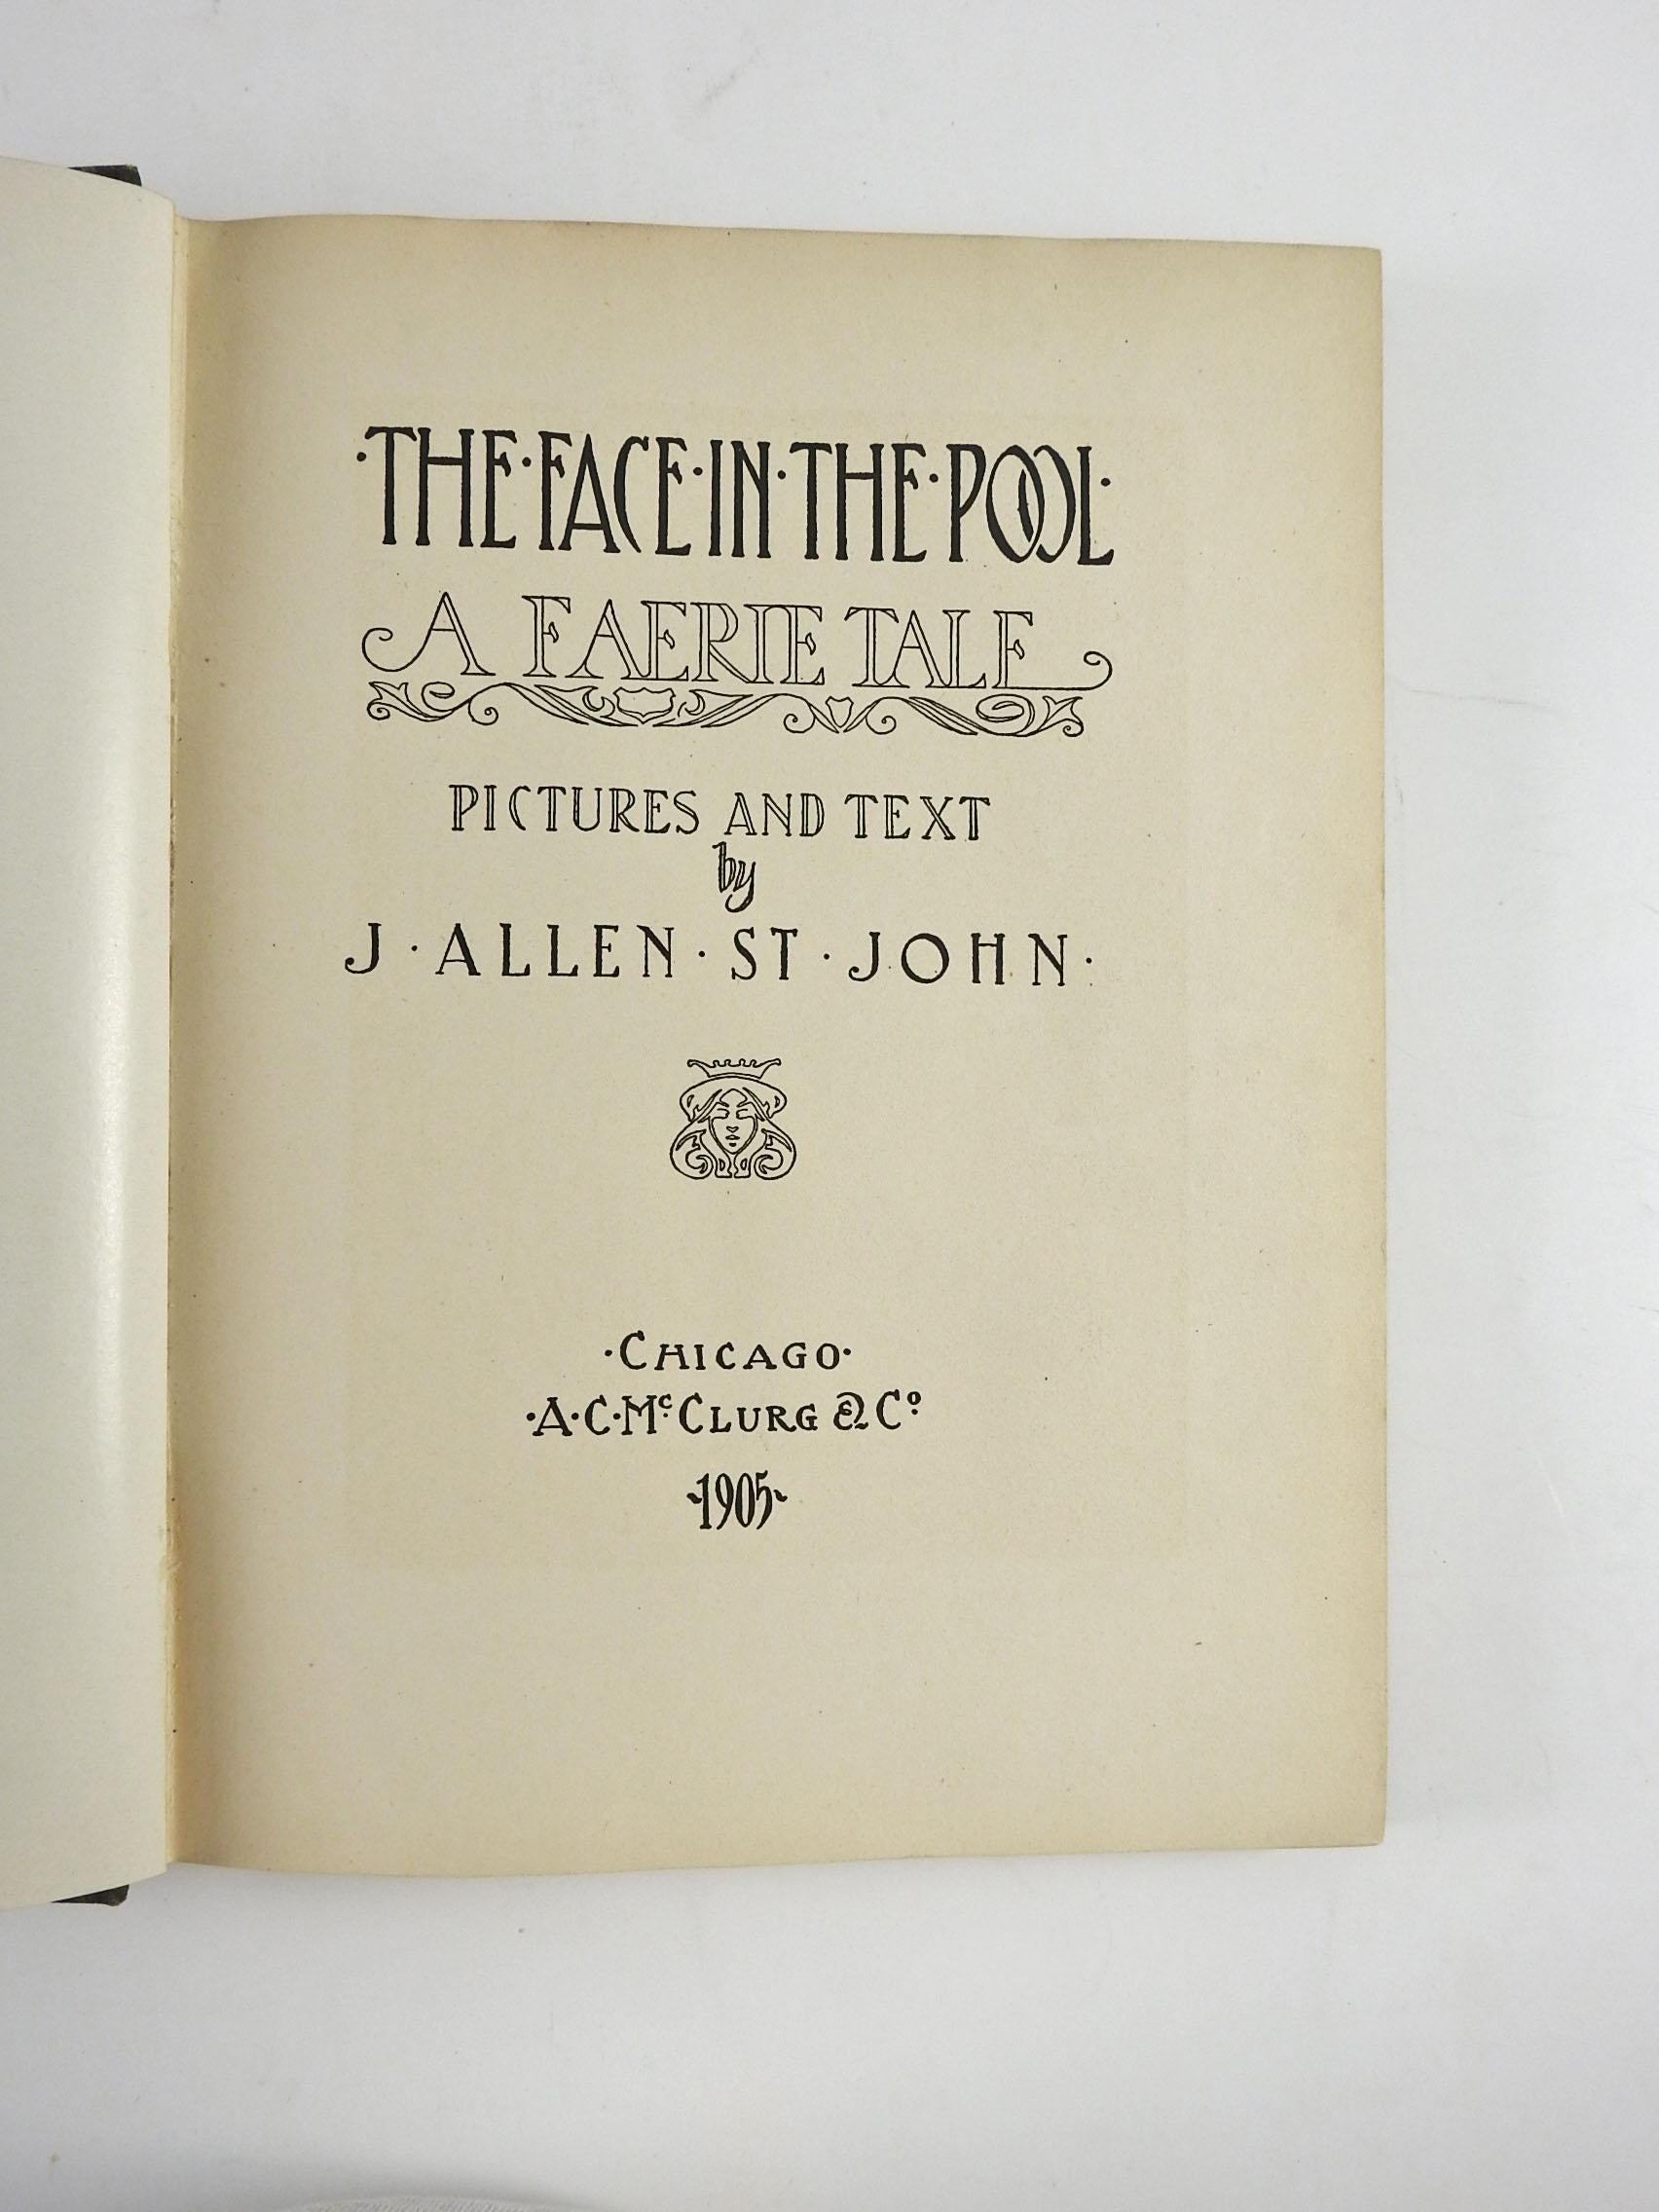 Le visage dans la piscine : Un conte de fées de J. Allen St. John, également illustré par l'auteur. A. C.I.C., Chicago, 1905.  James Allen St. John (1872-1957) était un auteur, artiste et illustrateur américain. Il est connu pour ses illustrations